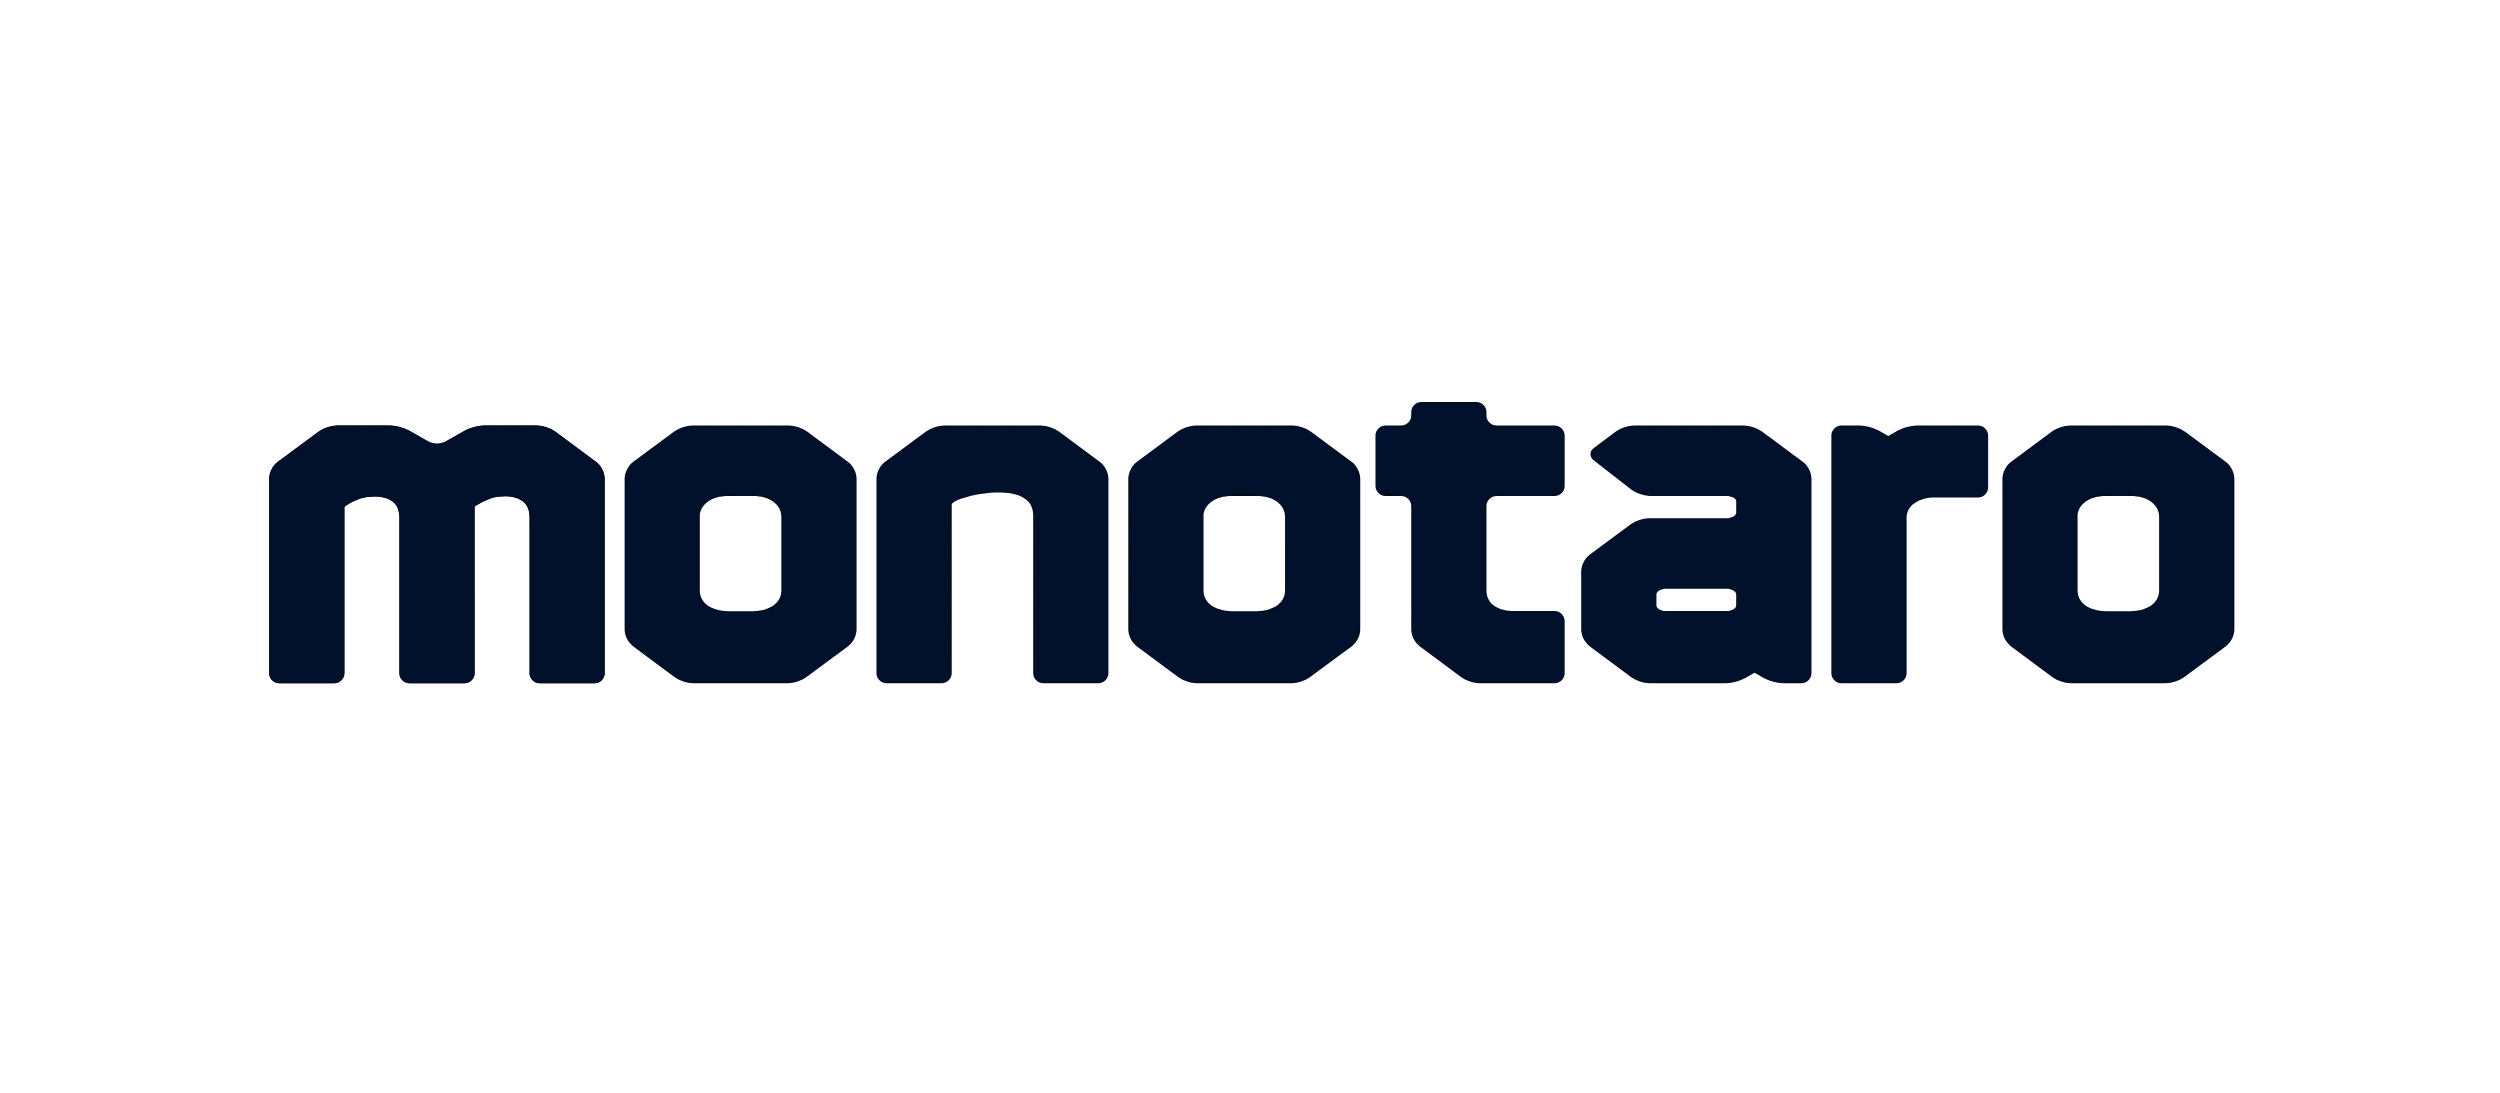 Monotaro logo